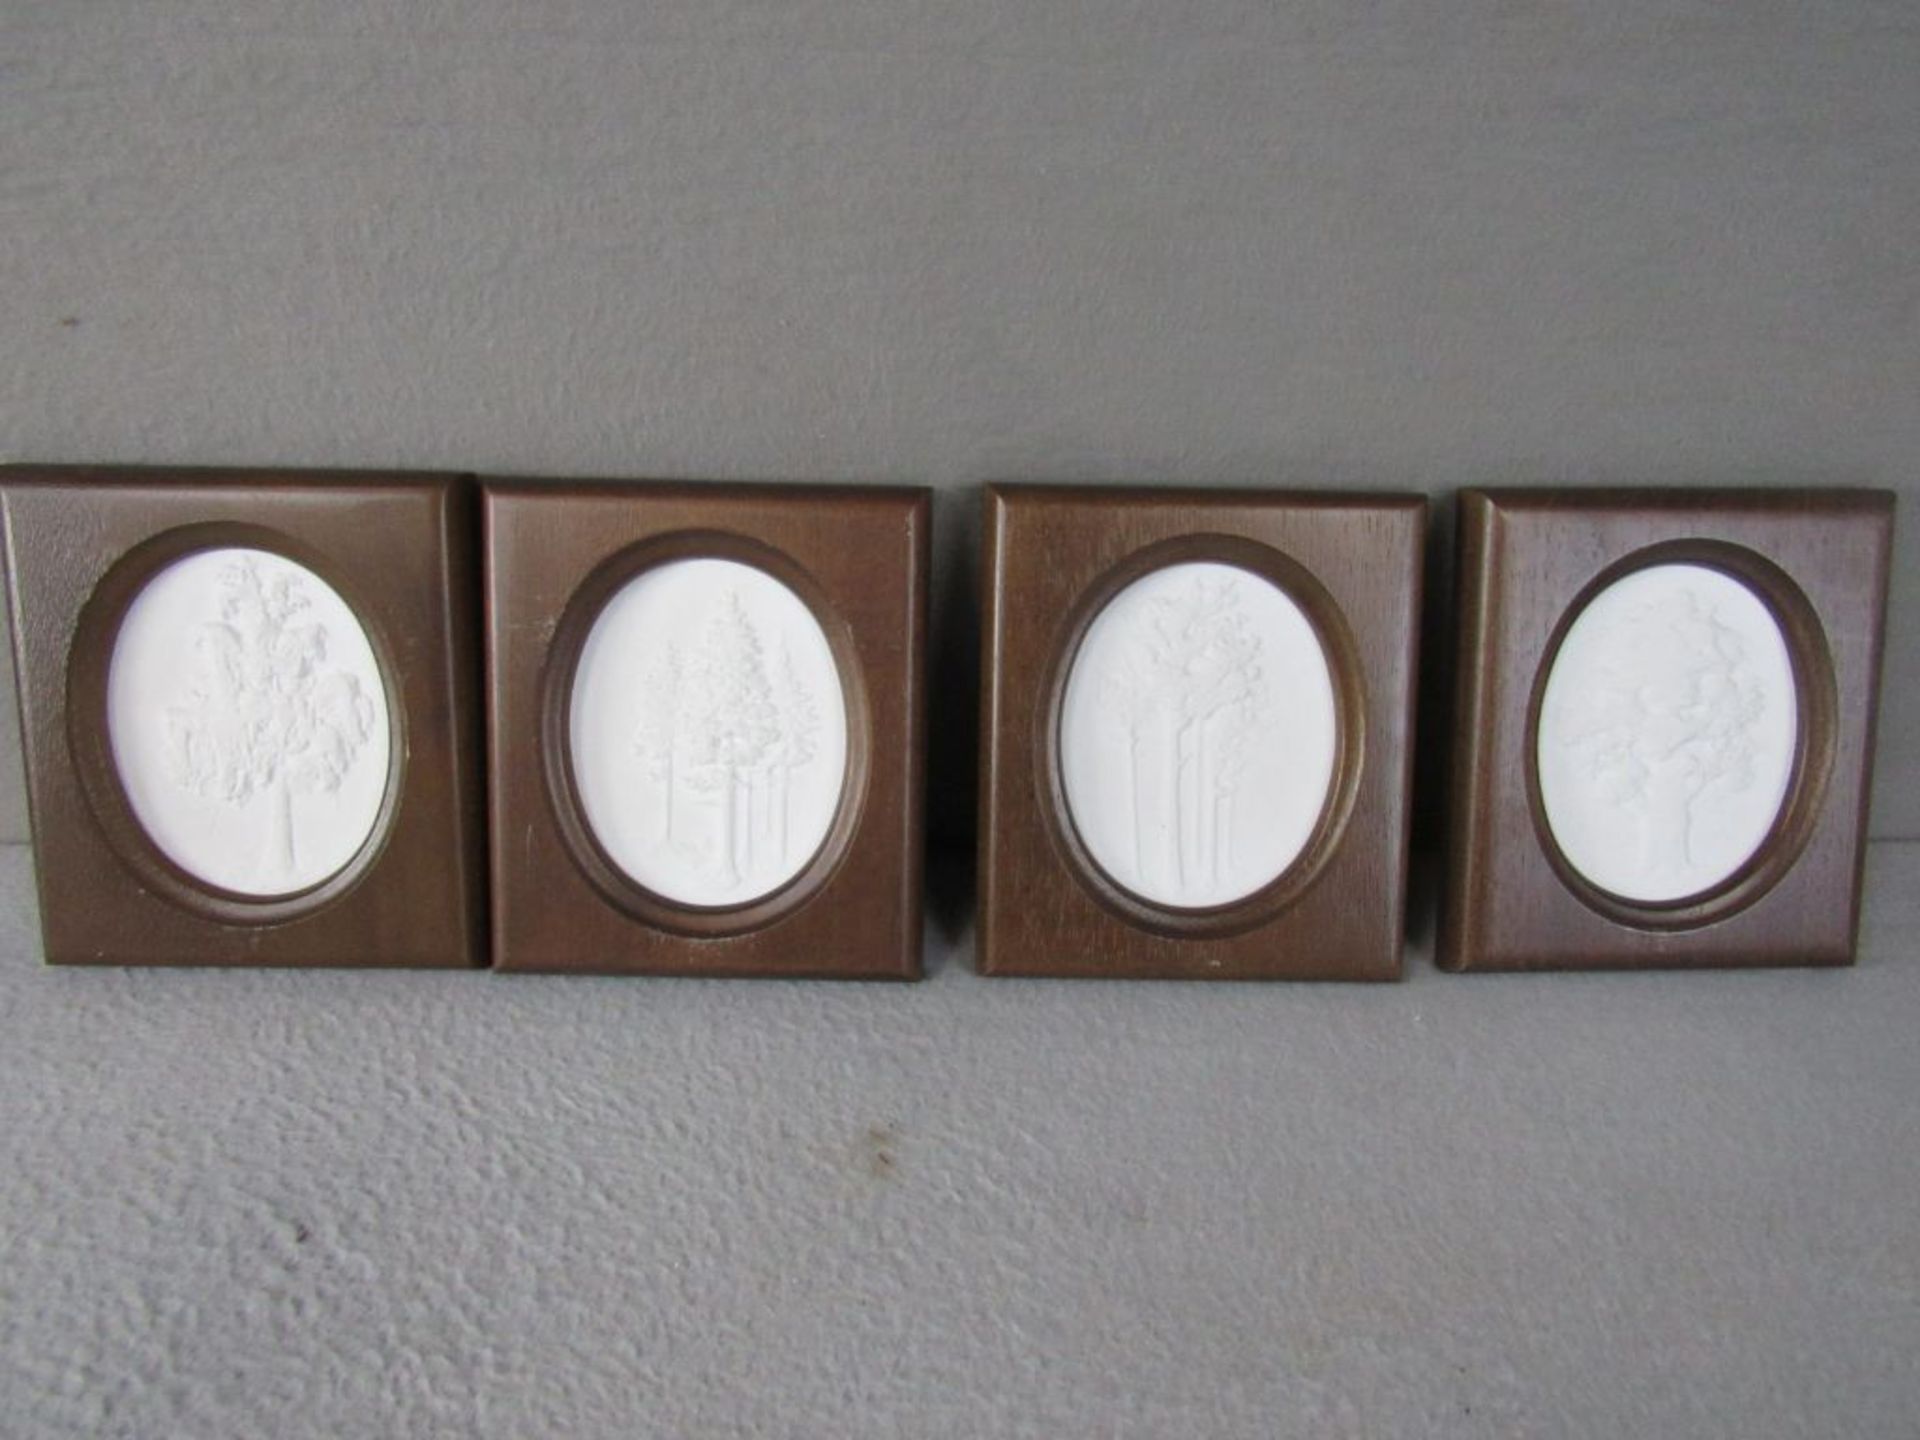 Vier Meissen Plaketten im Holzrahmen limitierte Auflage die Birke, die Kiefer, die Tanne und die Eic